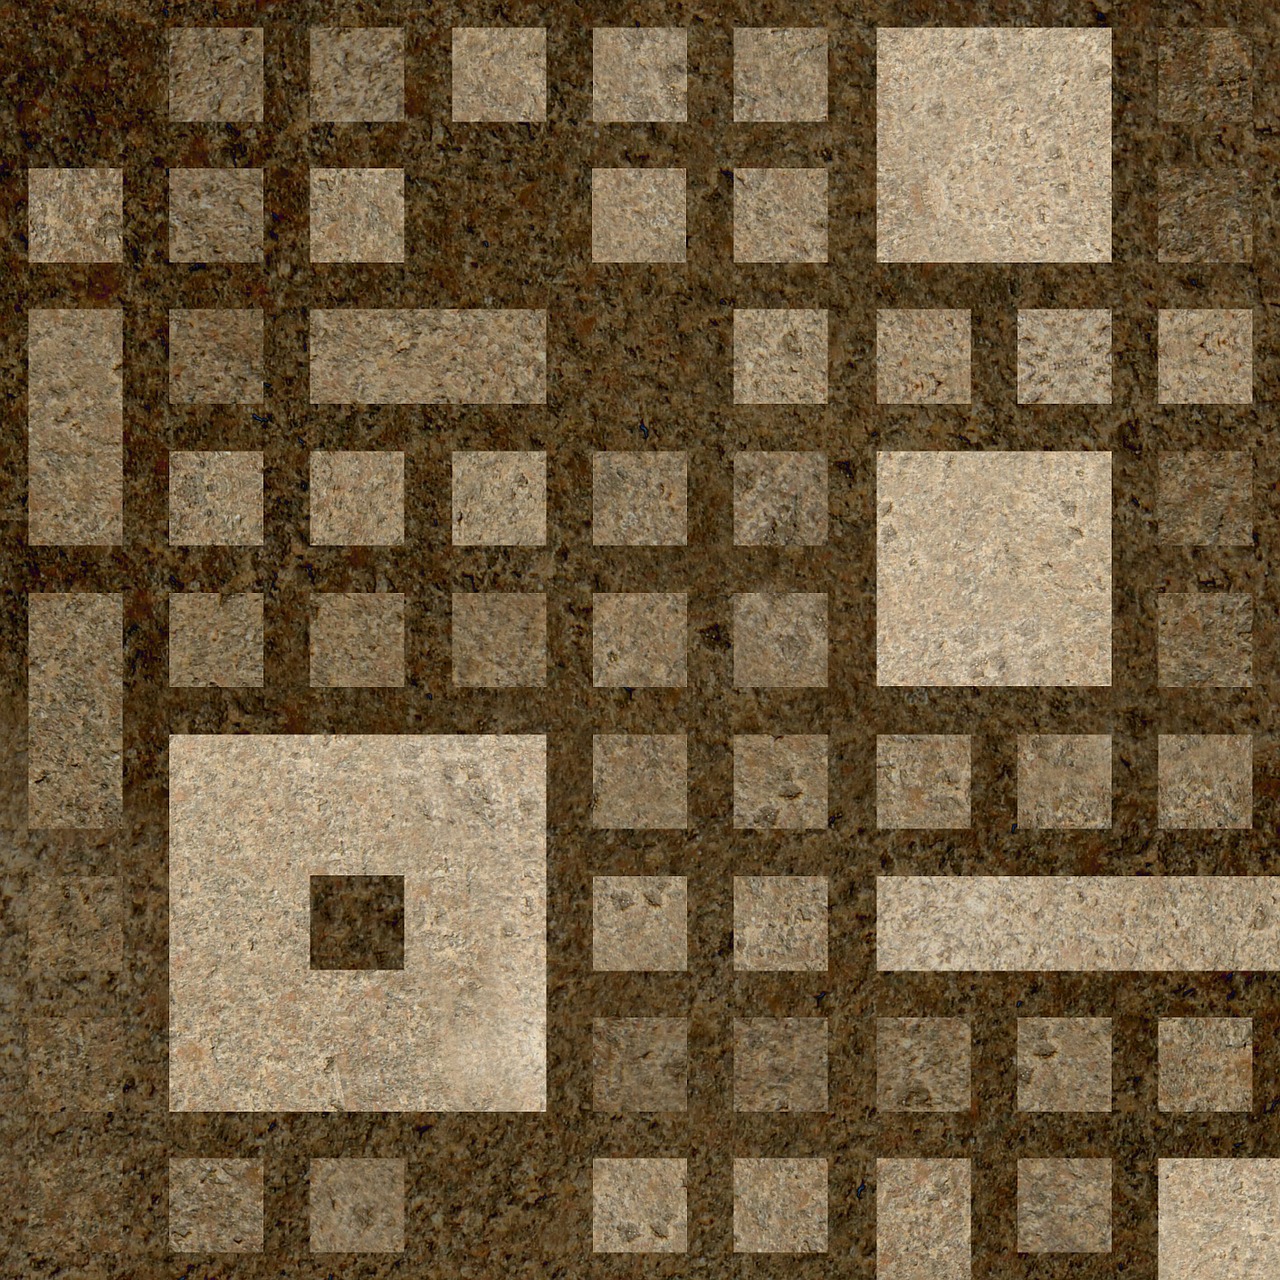 squares fragment background image free photo